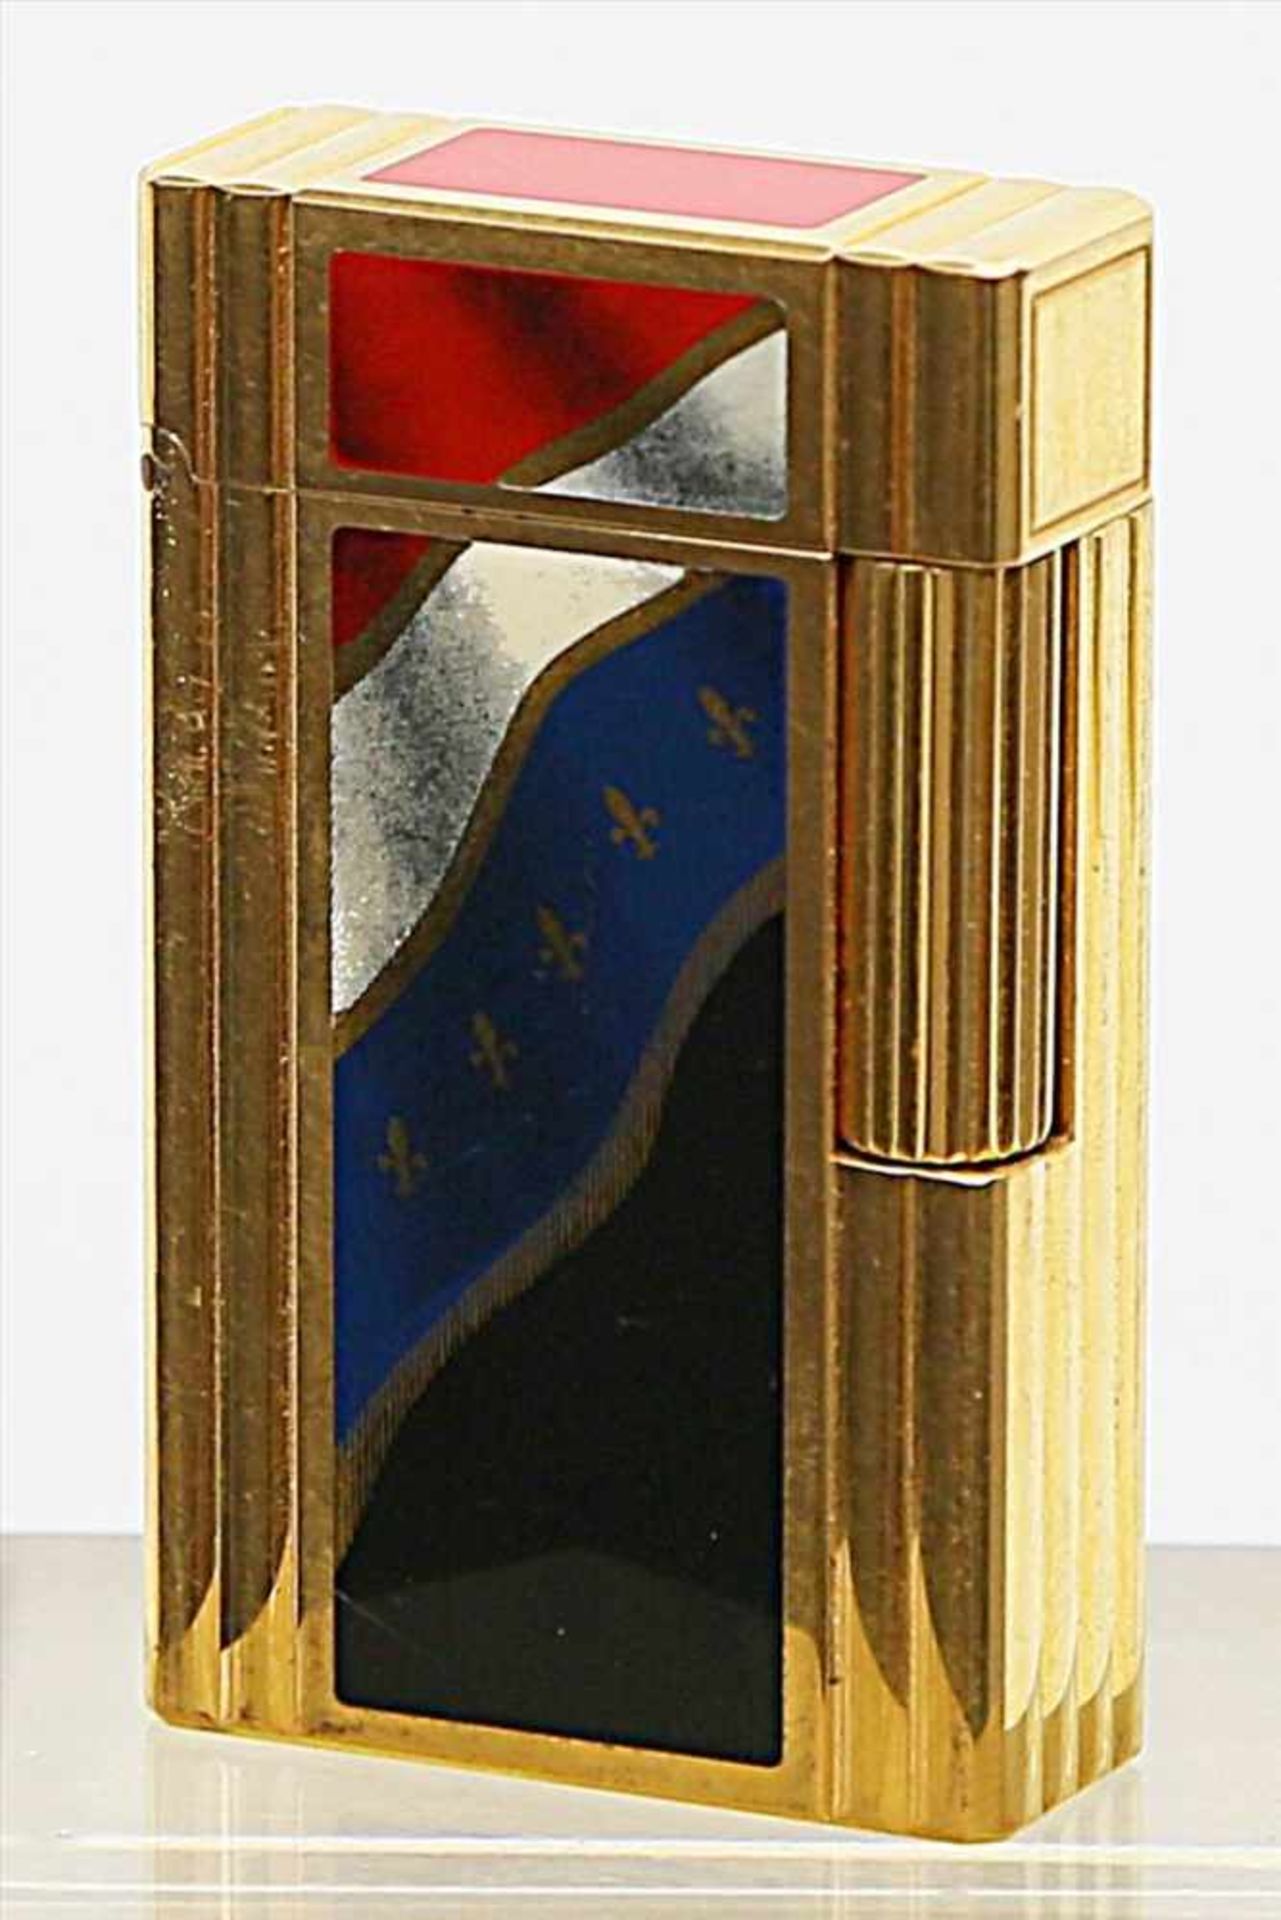 Limitiertes Feuerzeug "Französische Revolution 1789-1989", Dupont.Vergoldet mit farbigem